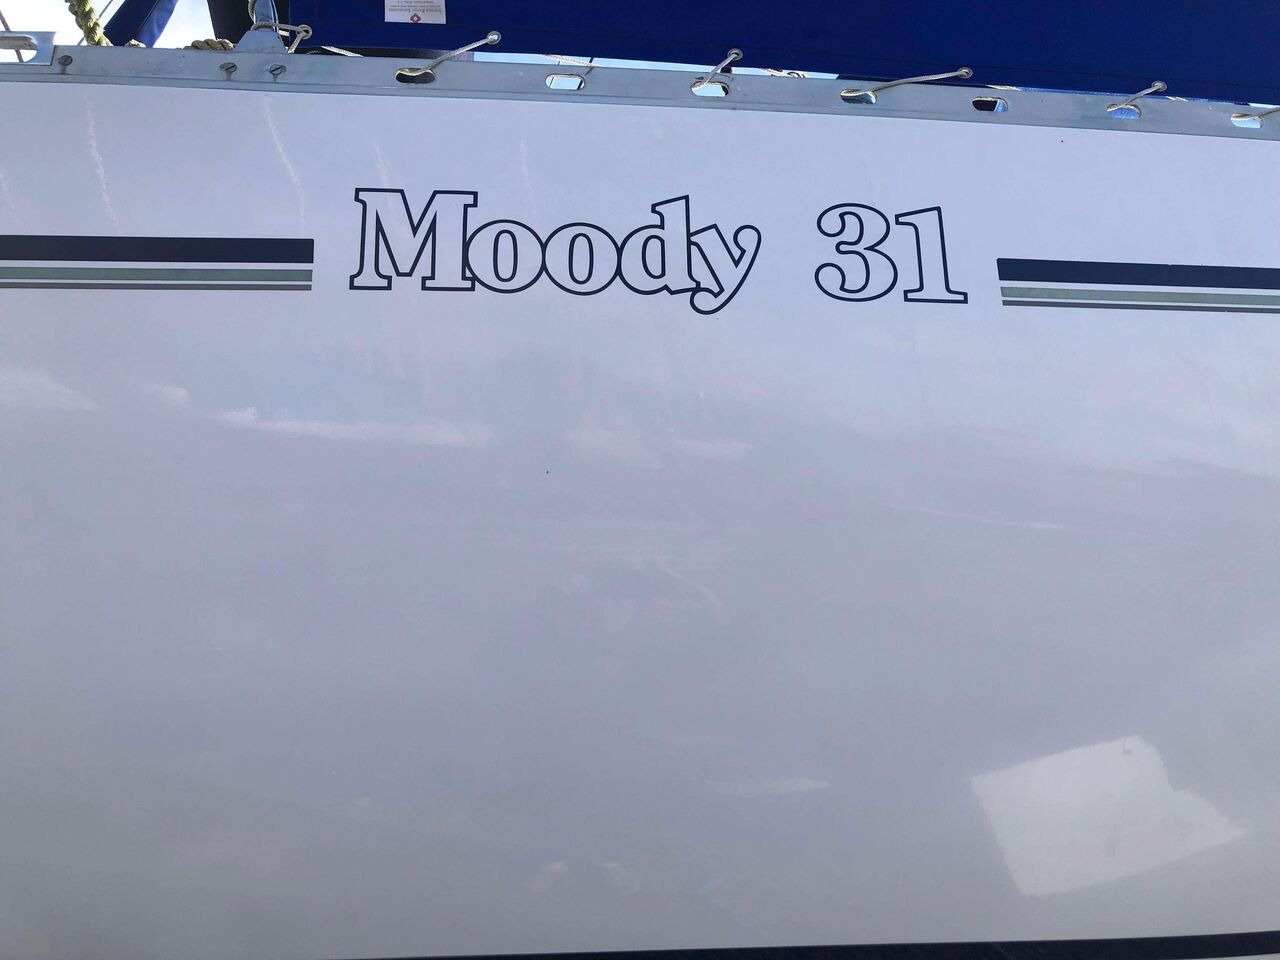 Moody 31 MK II - image 2